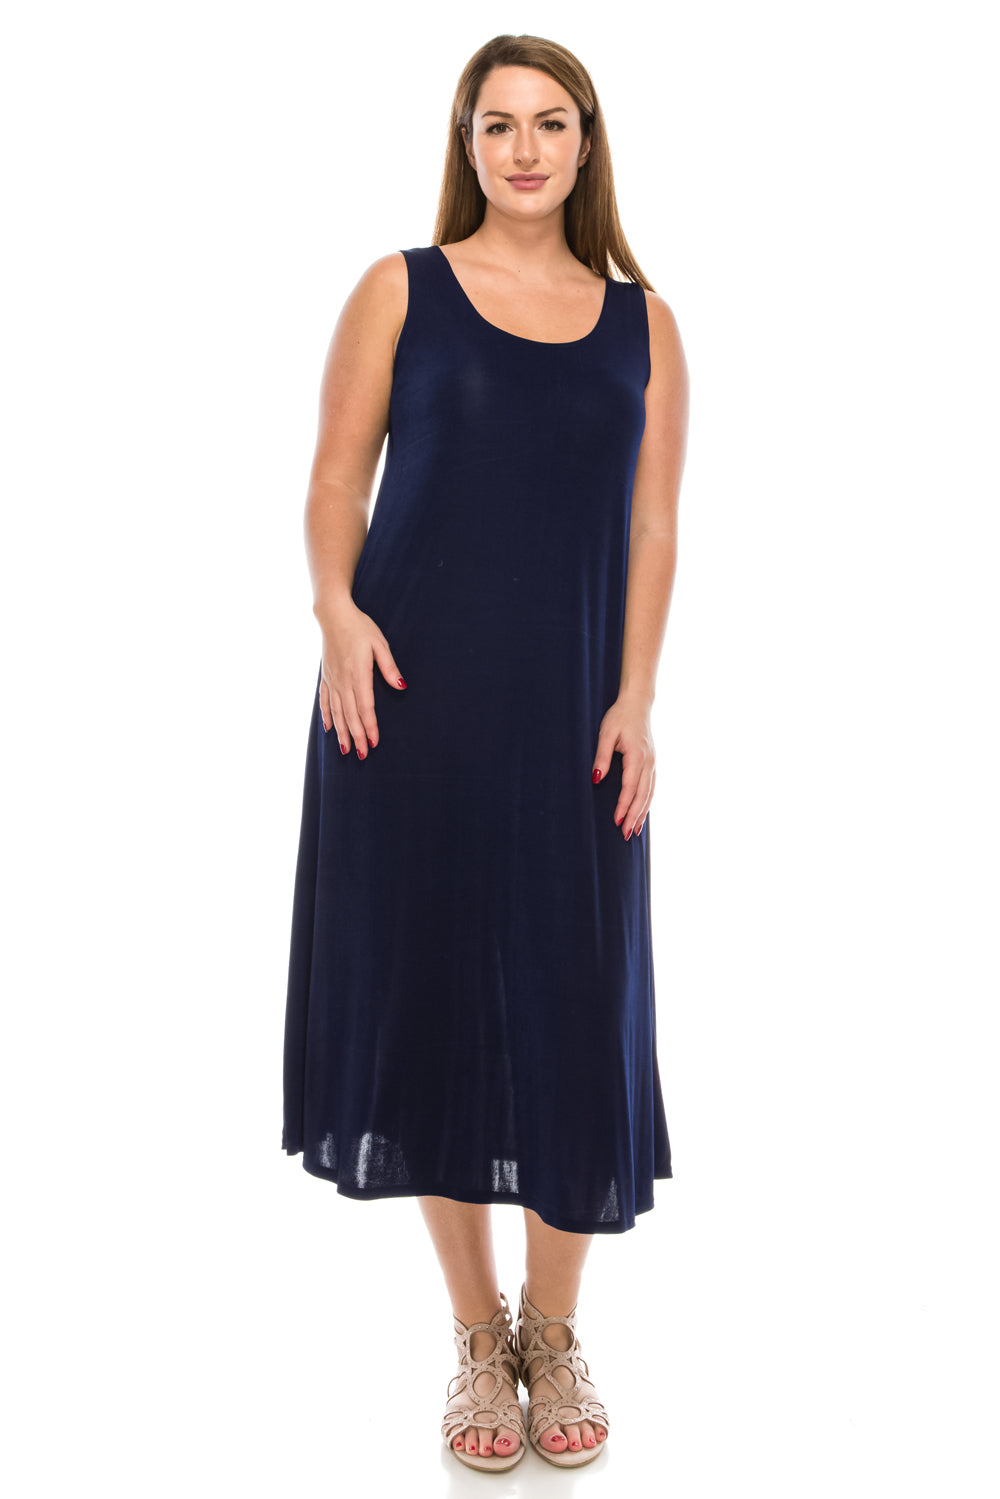 Jostar Women's Stretch Tank Maxi Dress, 700BN-T - Jostar Online